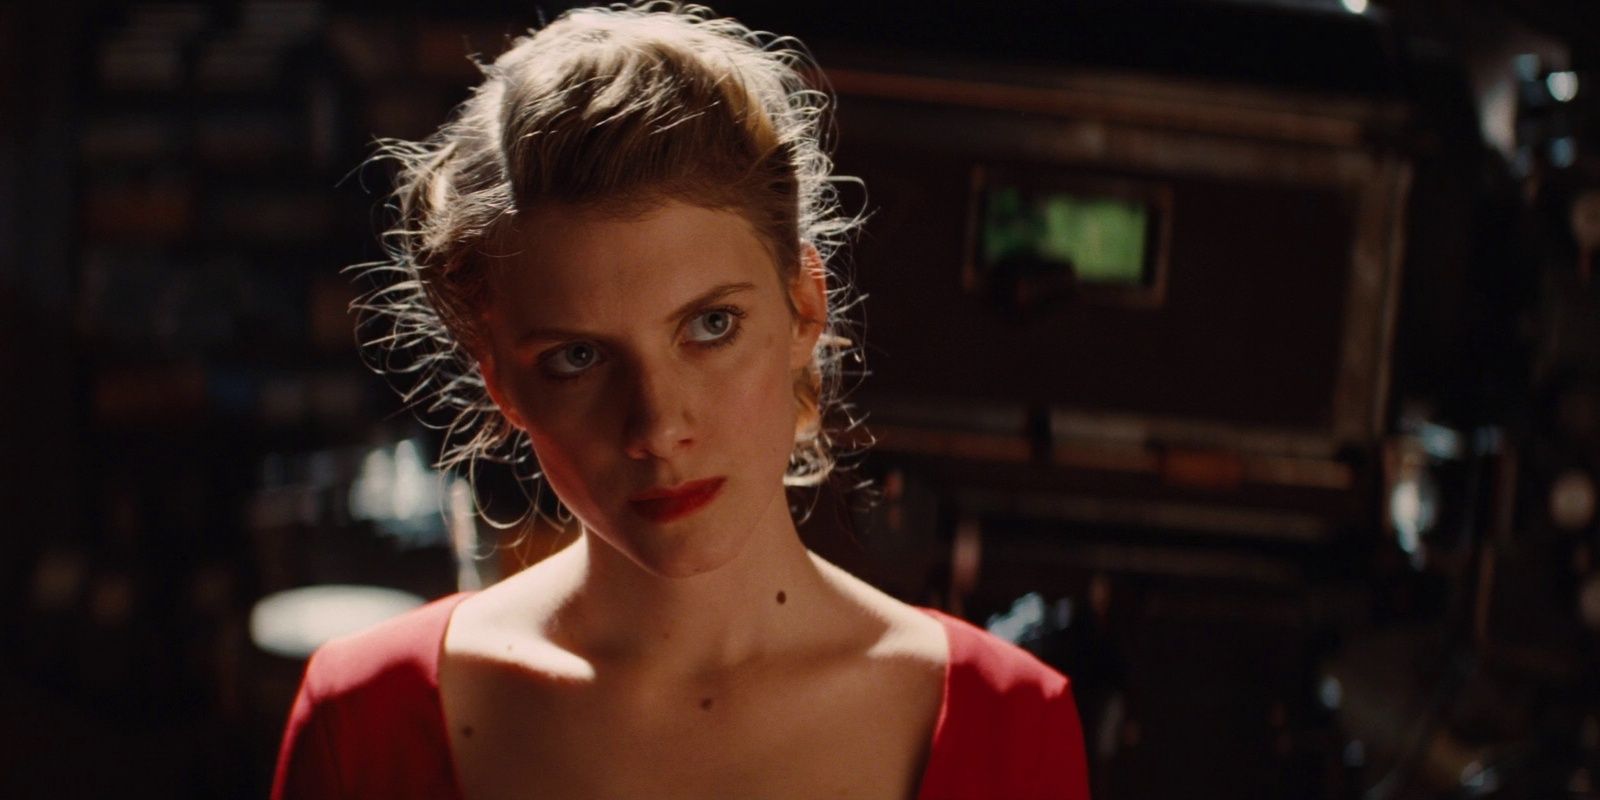 Shosanna usa um vestido vermelho na estreia do filme Bastardos Inglórios